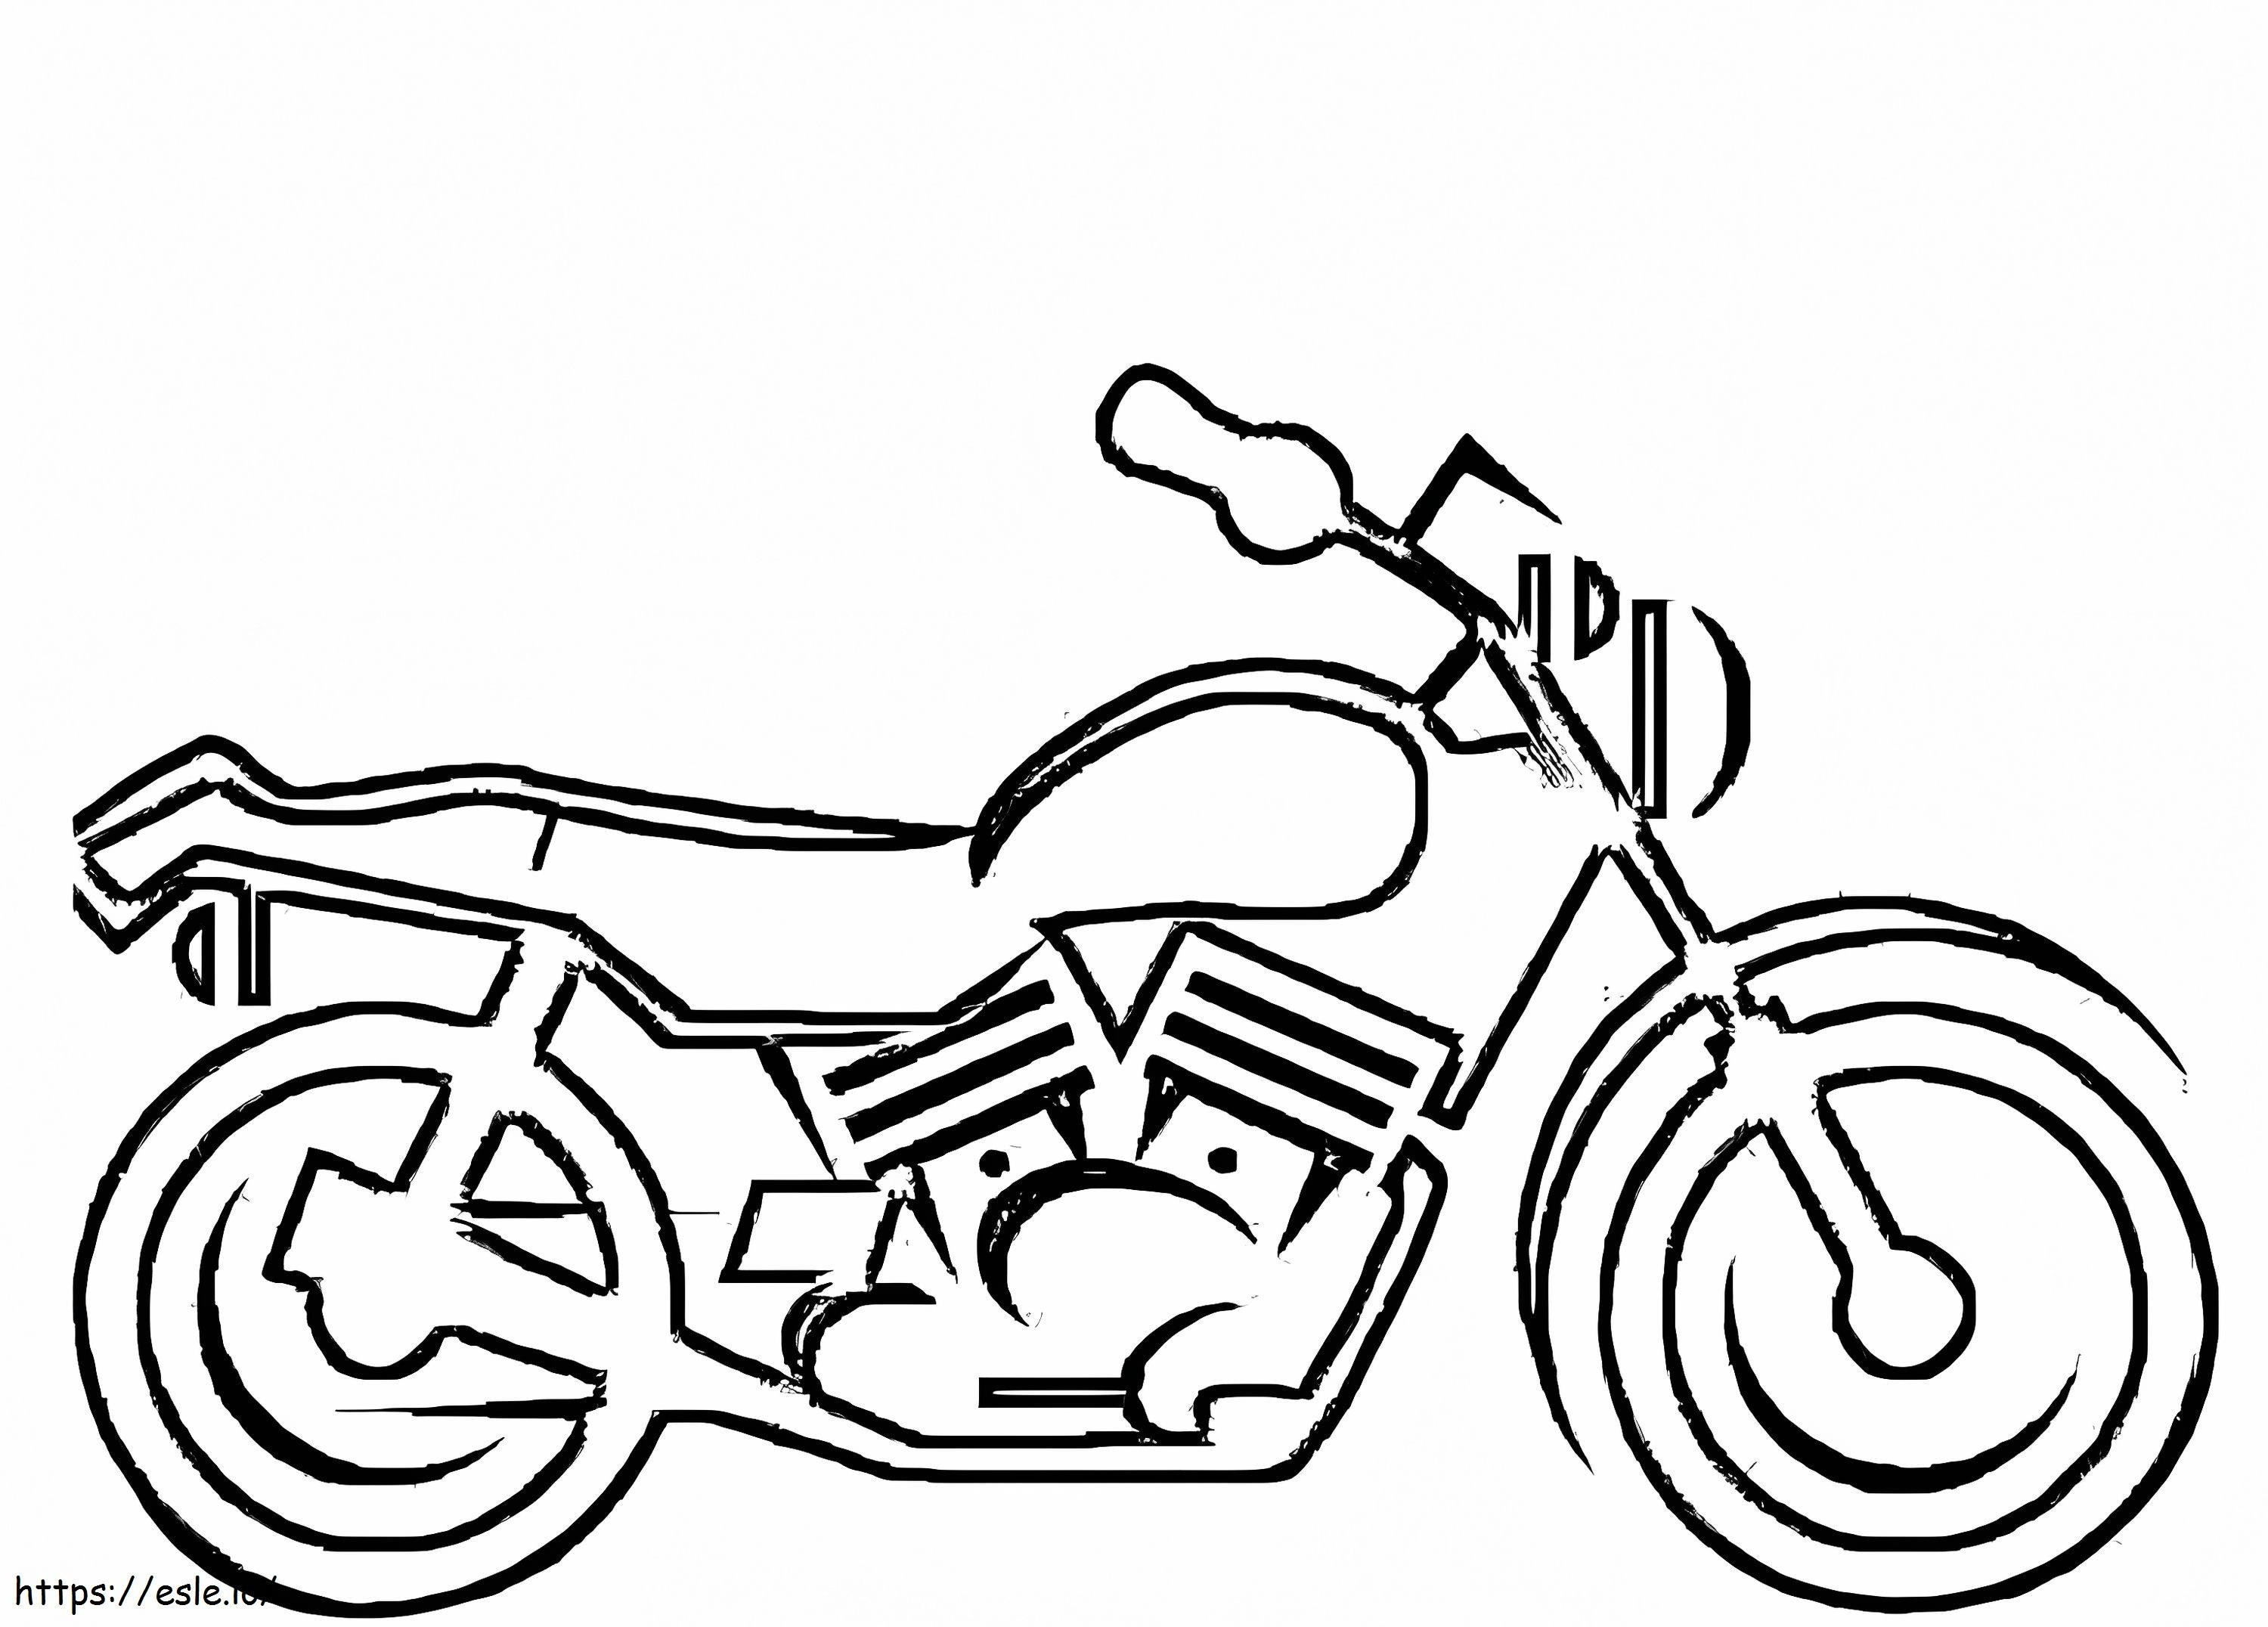 Ein Motorrad ausmalbilder